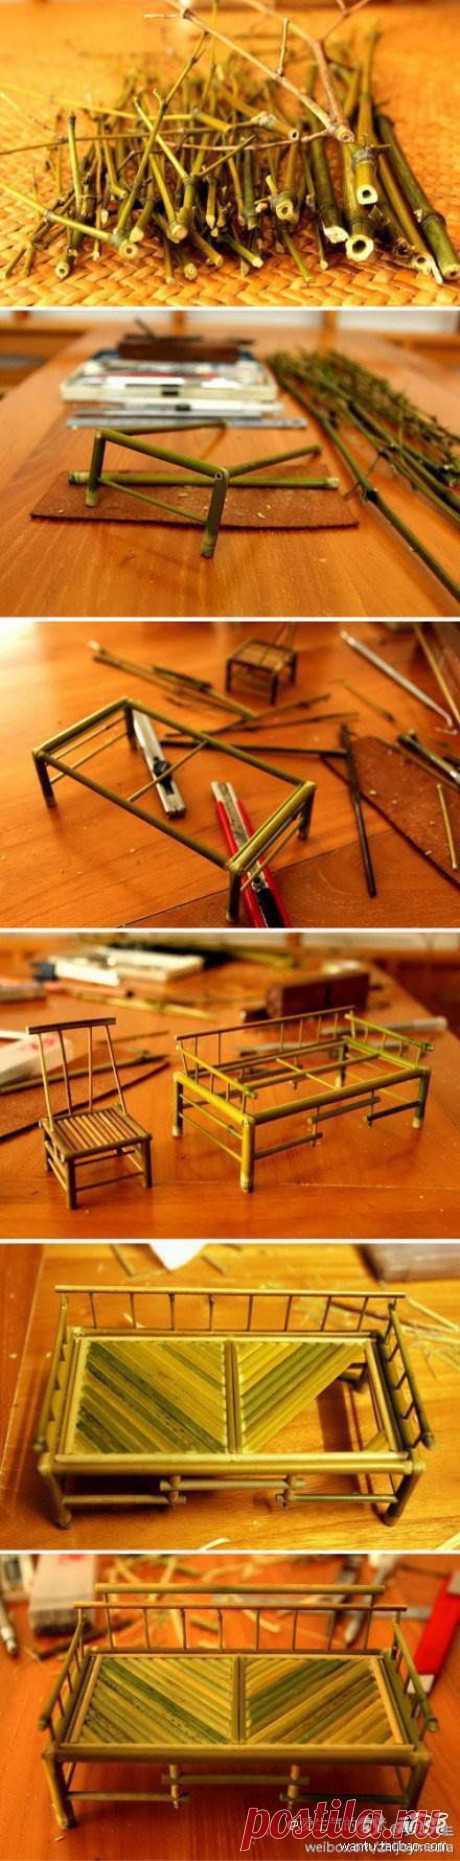 Бамбук DIY мини мебель DIY проекты | UsefulDIY.com